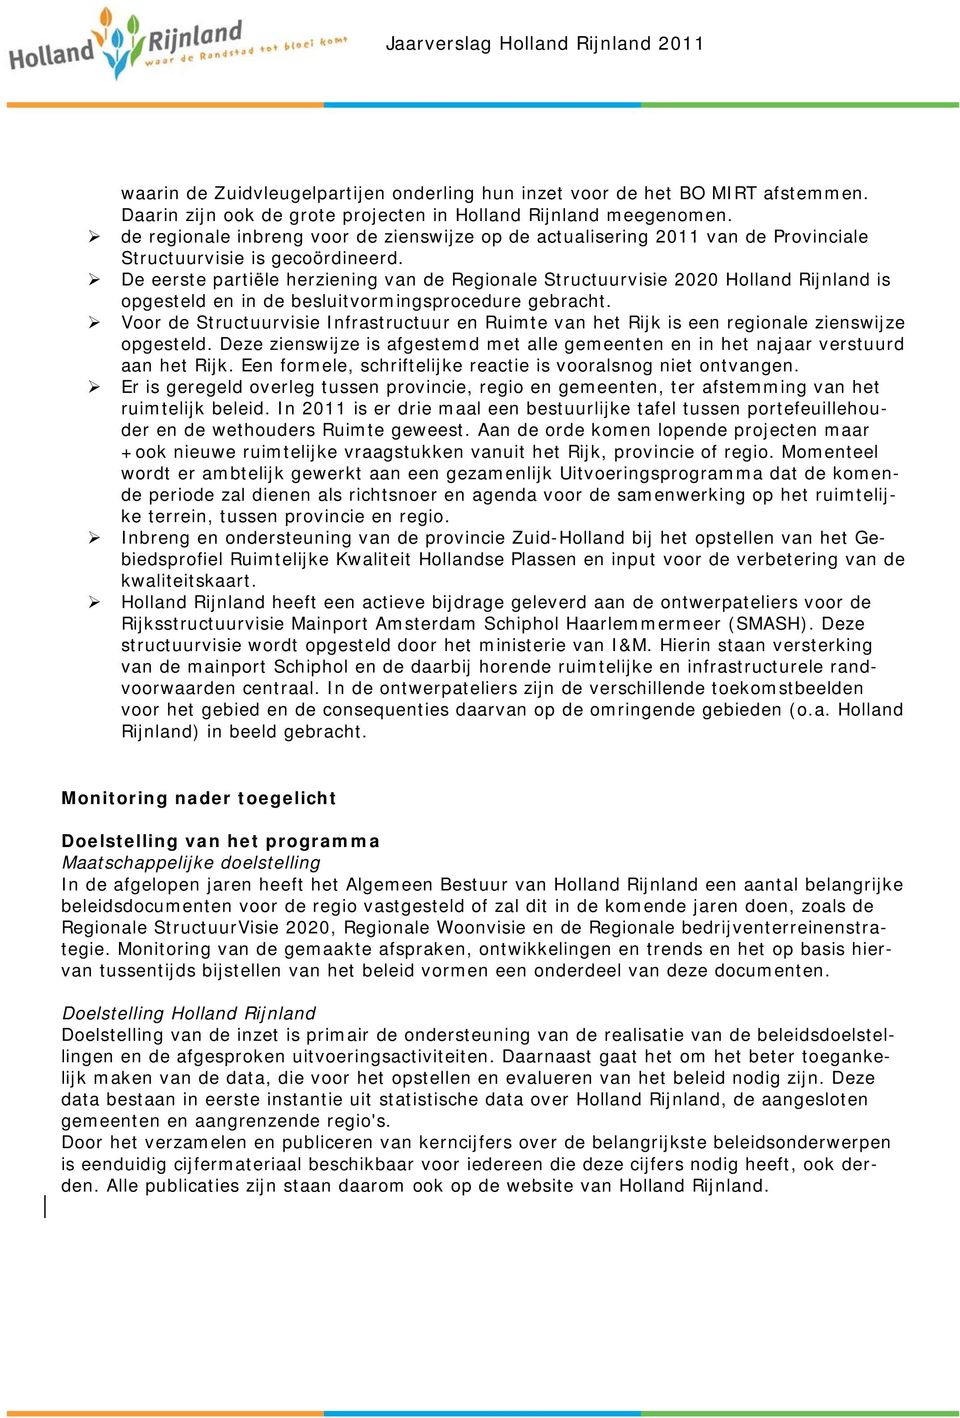 De eerste partiële herziening van de Regionale Structuurvisie 2020 Holland Rijnland is opgesteld en in de besluitvormingsprocedure gebracht.